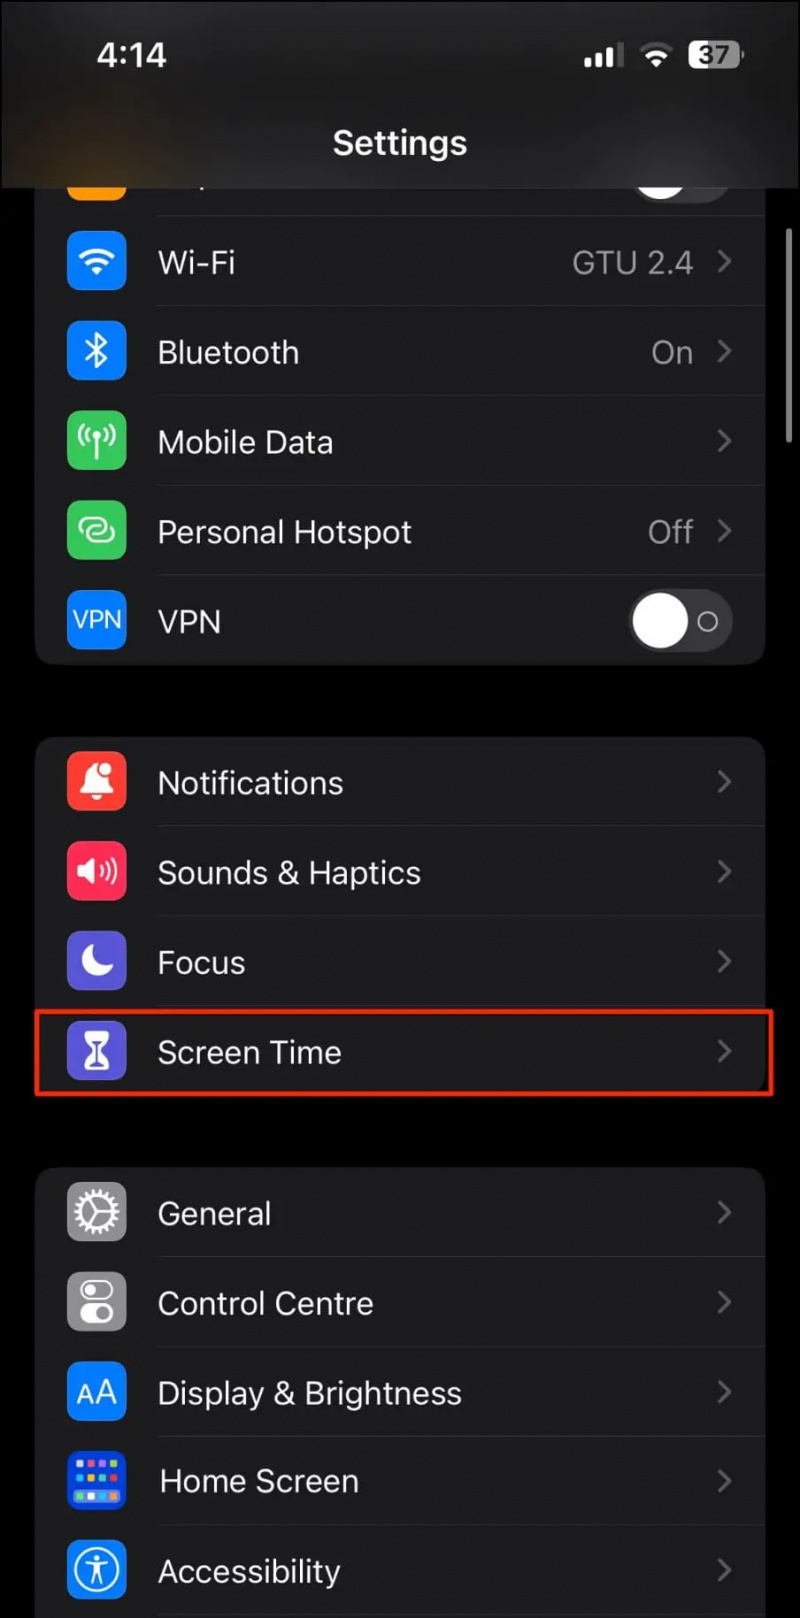   Zablokuj aplikacje na iPhonie za pomocą ograniczeń treści